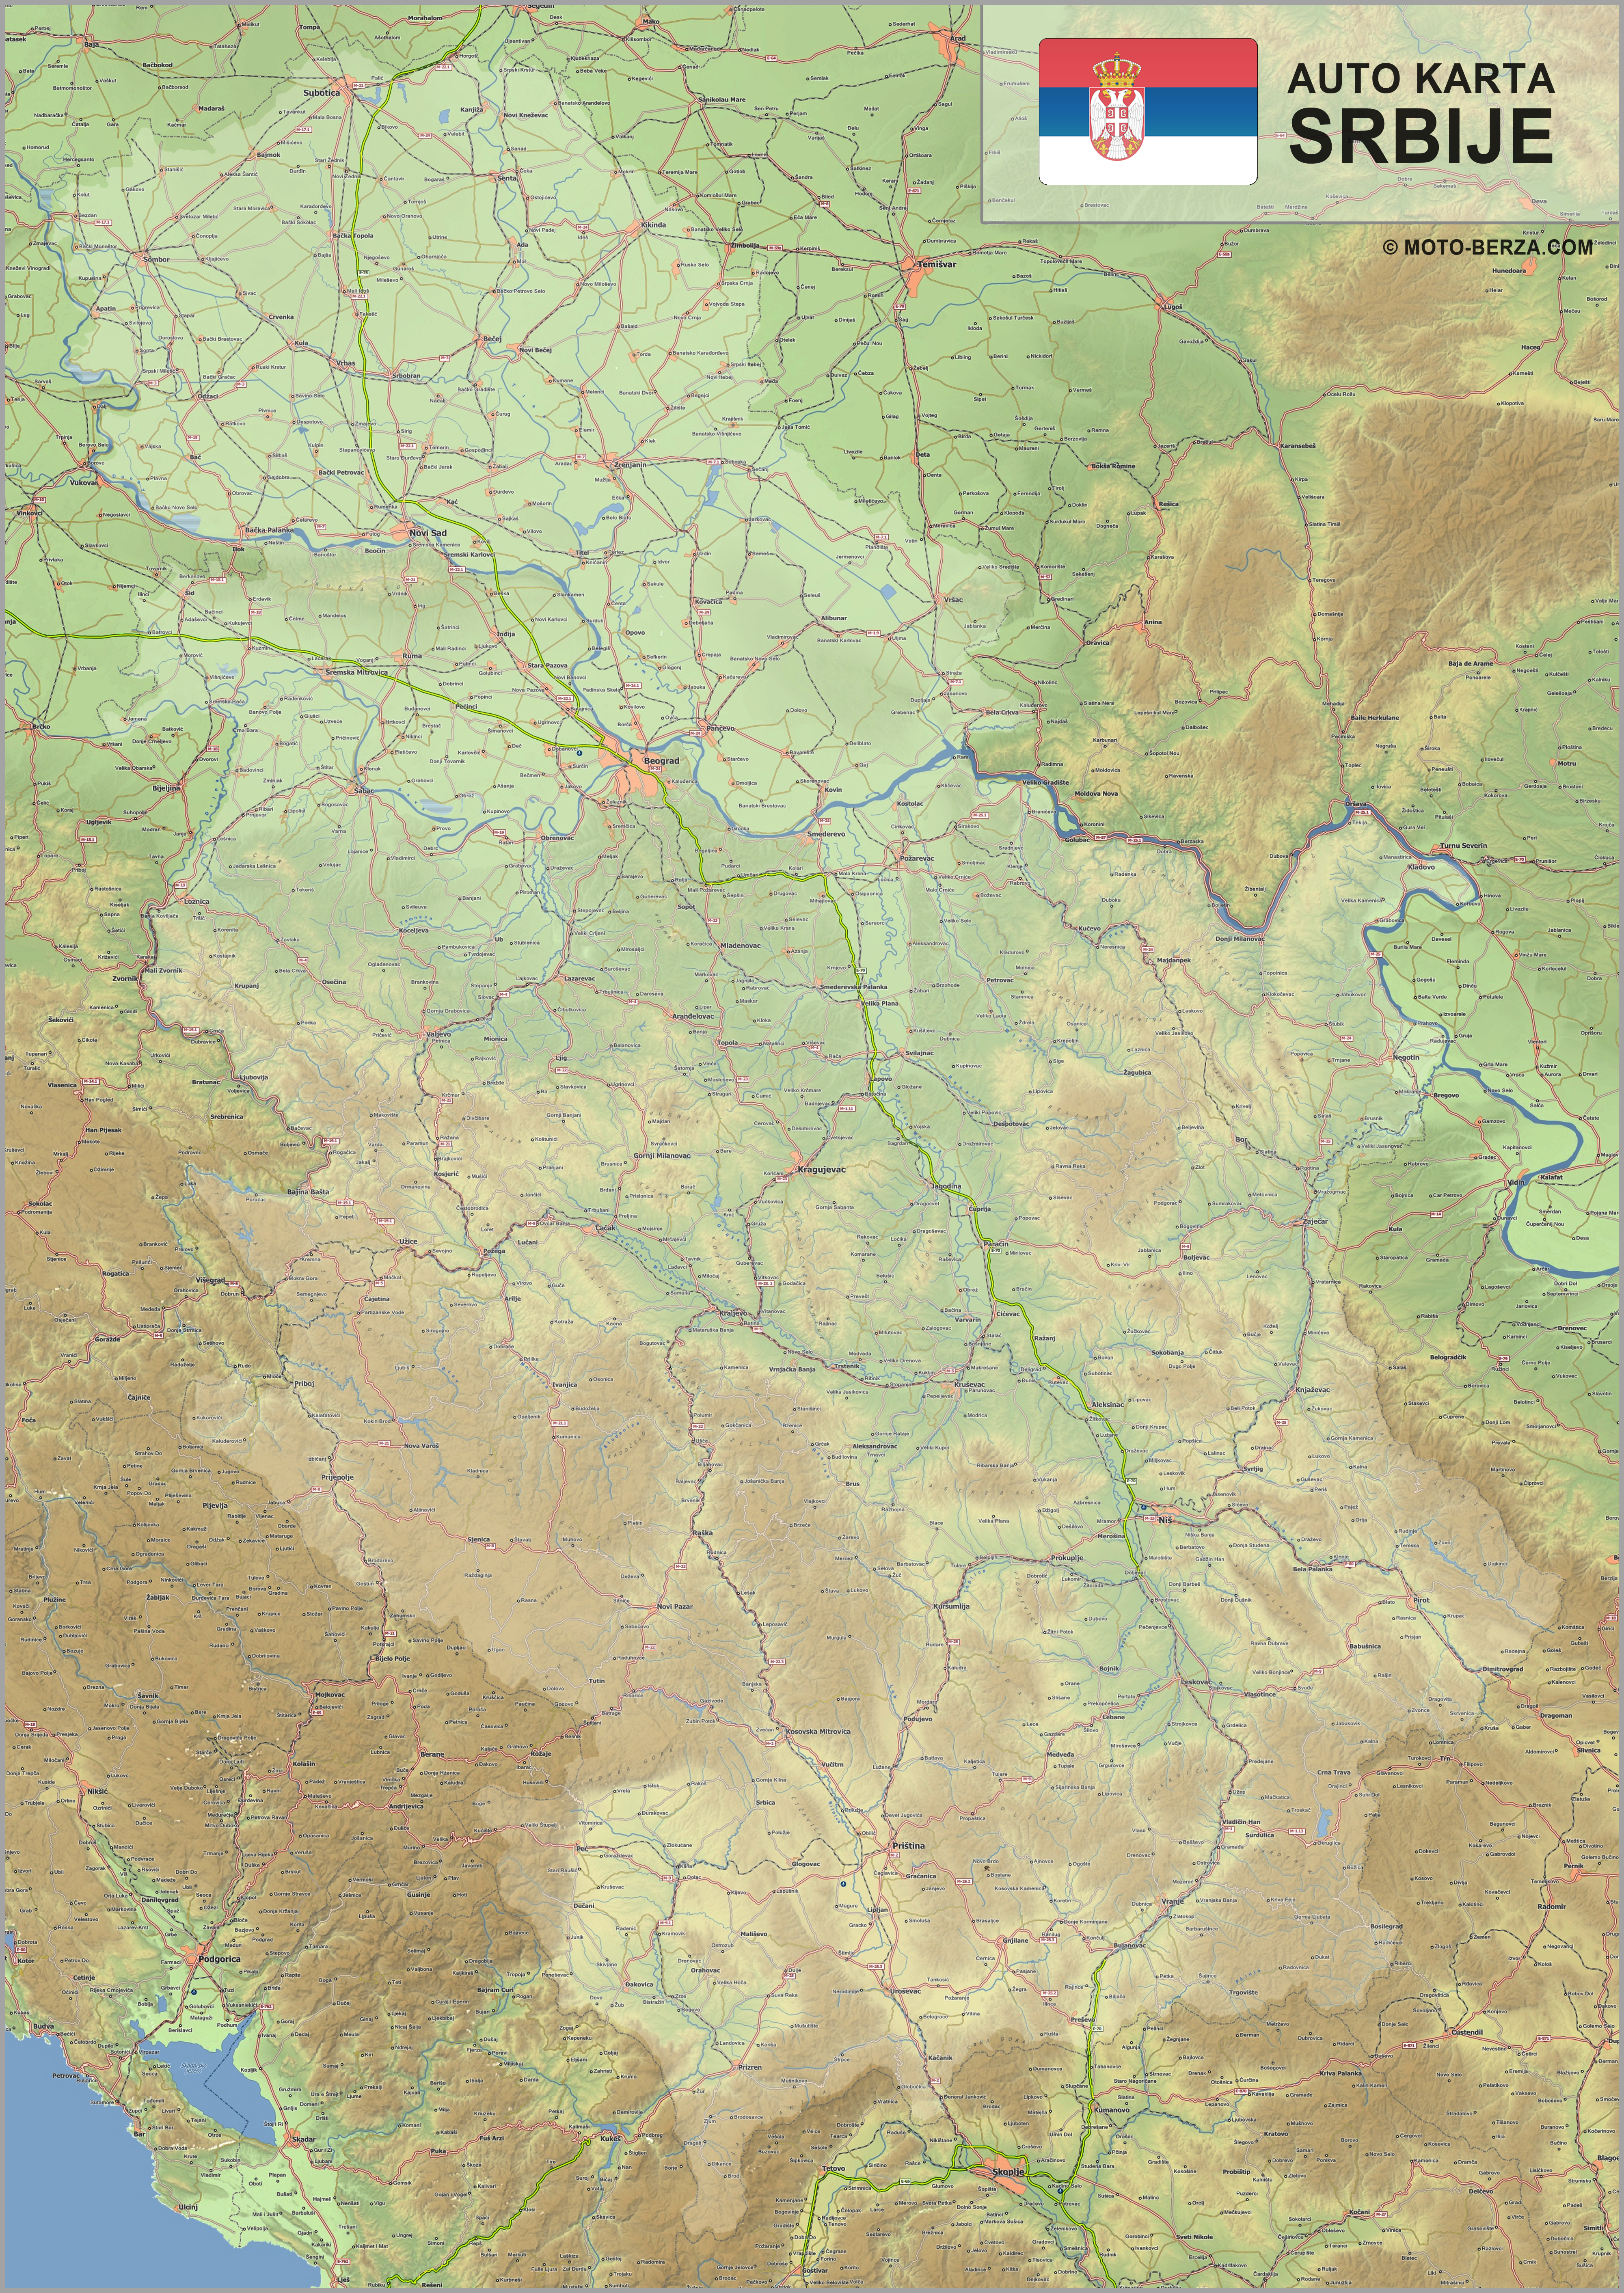 mapa srbije kilometraza Mapa srbije   Auto karta Srbije   Geografska karta sa putevima mapa srbije kilometraza